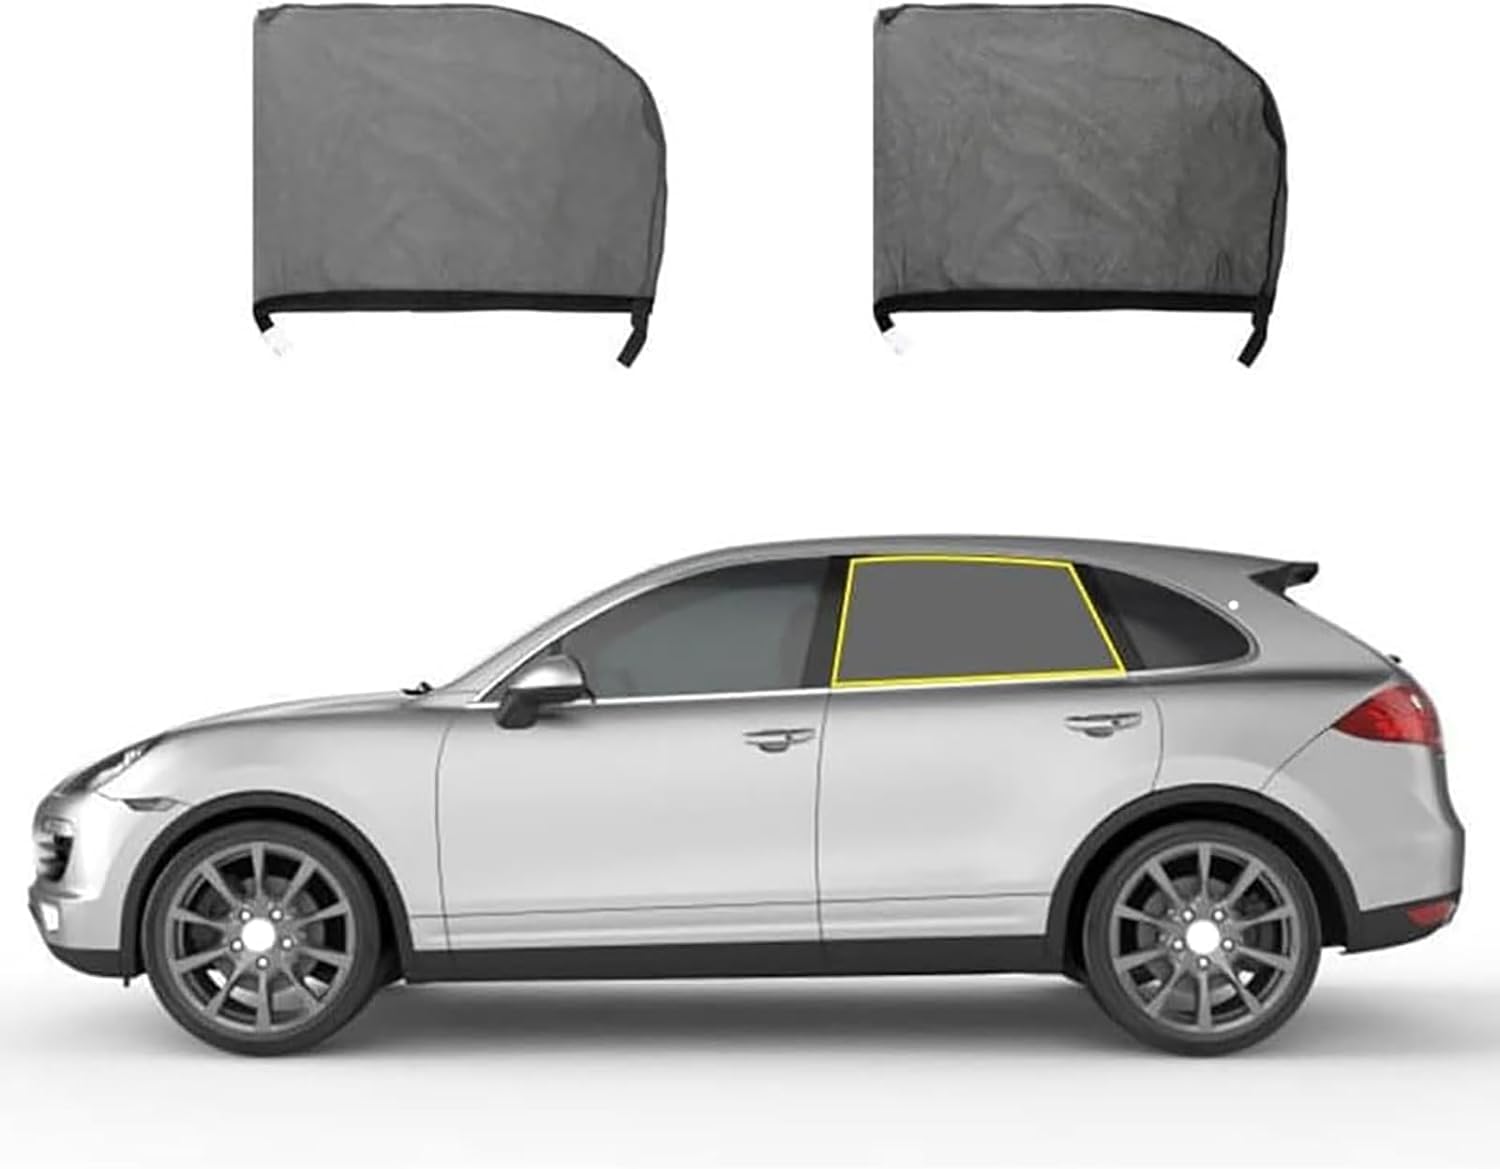 Sonnenschutz Auto Baby für Audi A8 Saloon D3 (5seats) LWB 2002-2010, UV Schutz für Seitenfenster Meshmaterial Schützt Mitfahrer, Kinder & Haustiere,B/Rear-Window von QWZWFC88